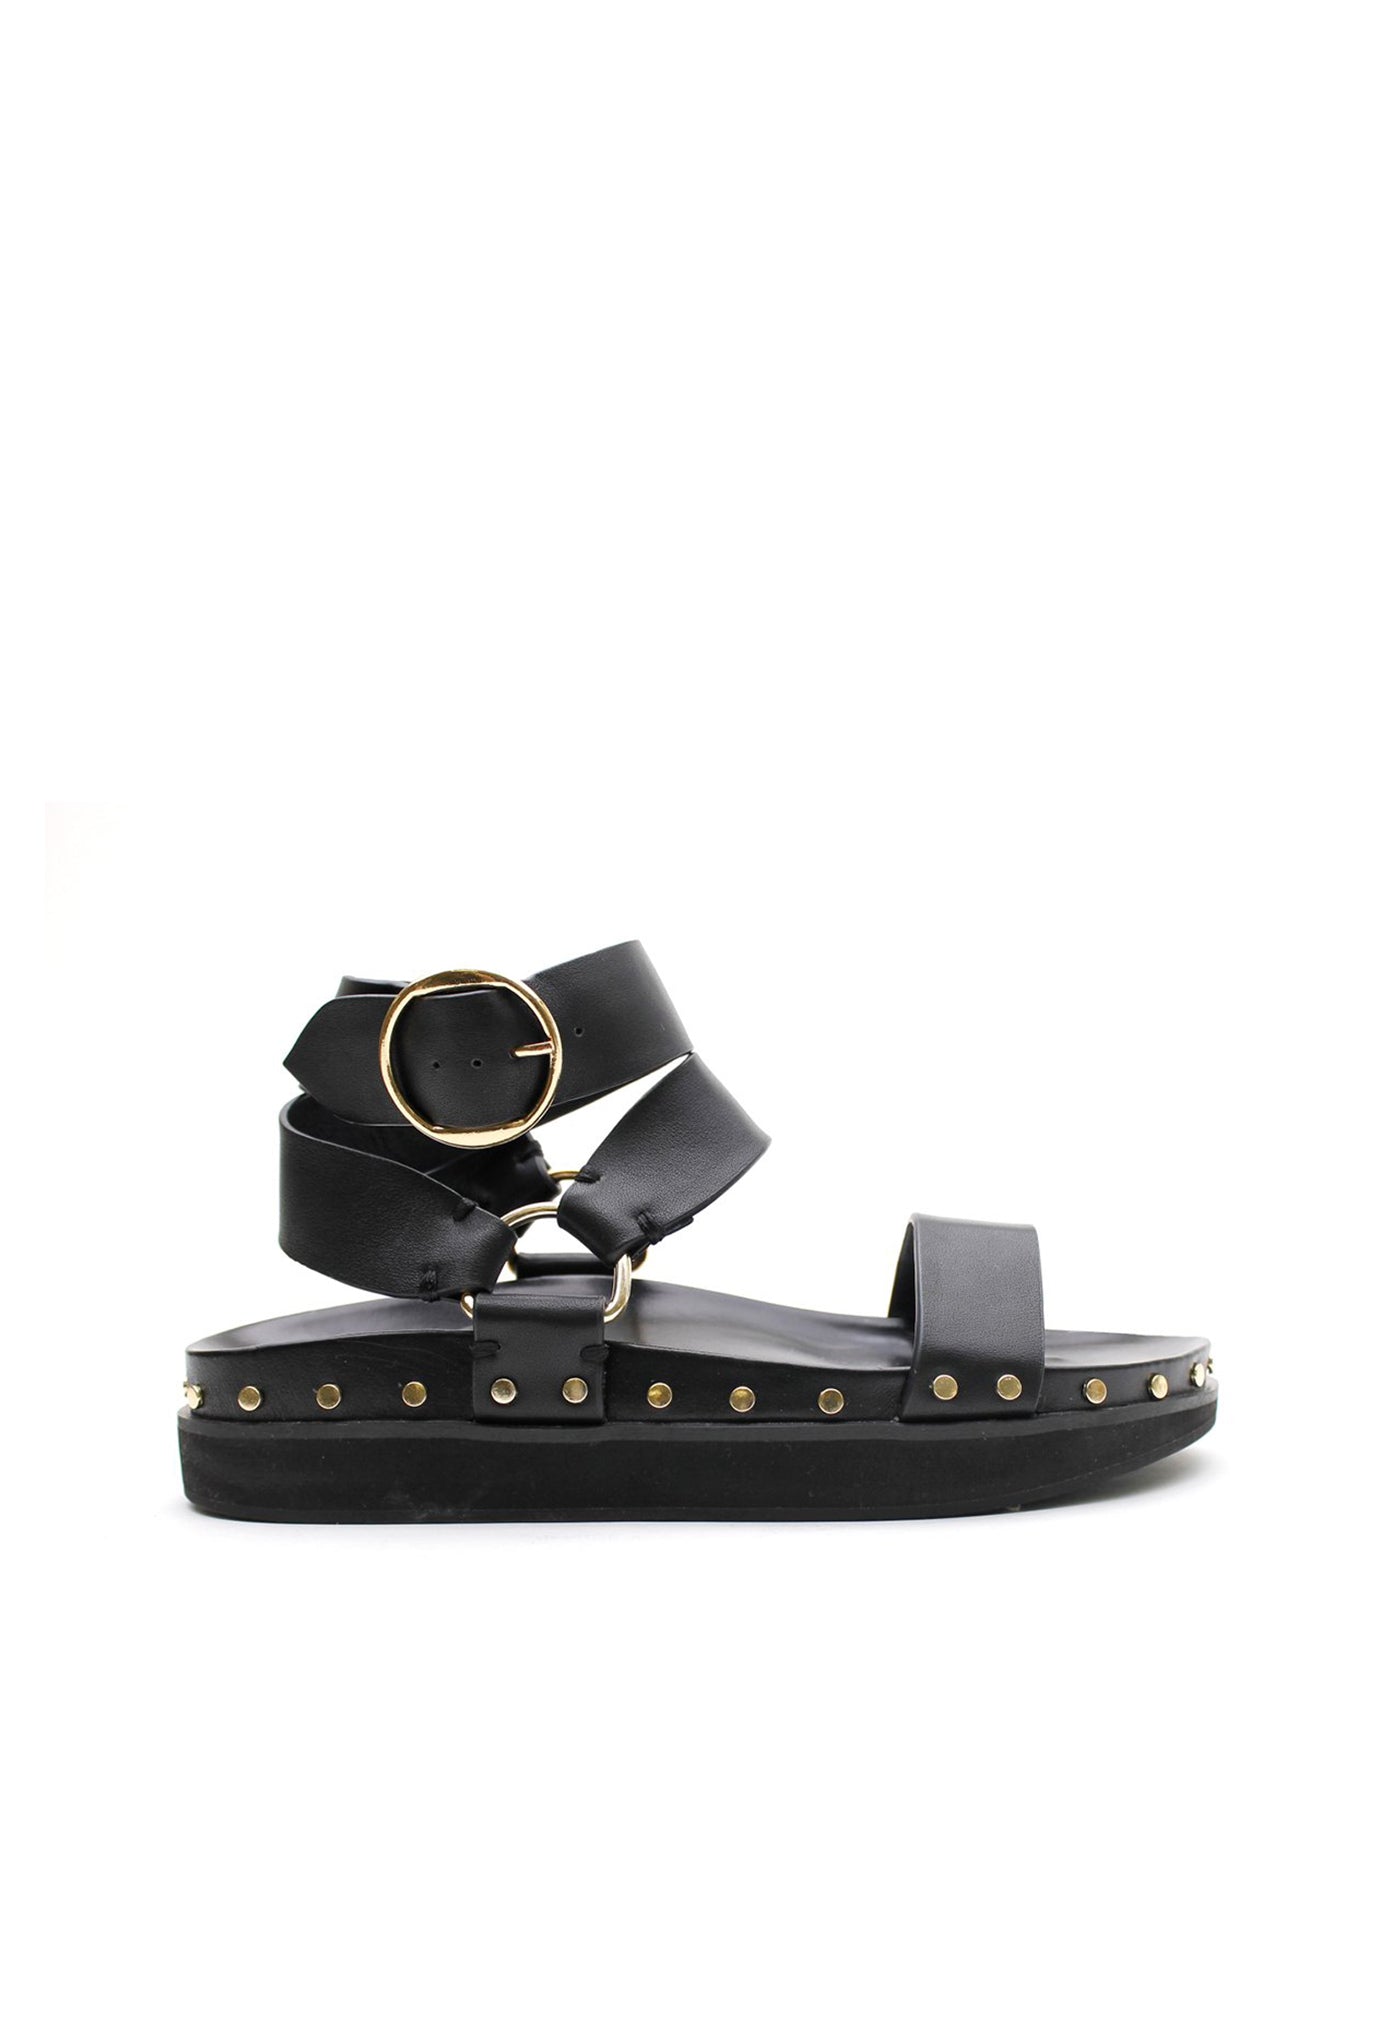 Studded Sandal - Black/Gold sold by Angel Divine